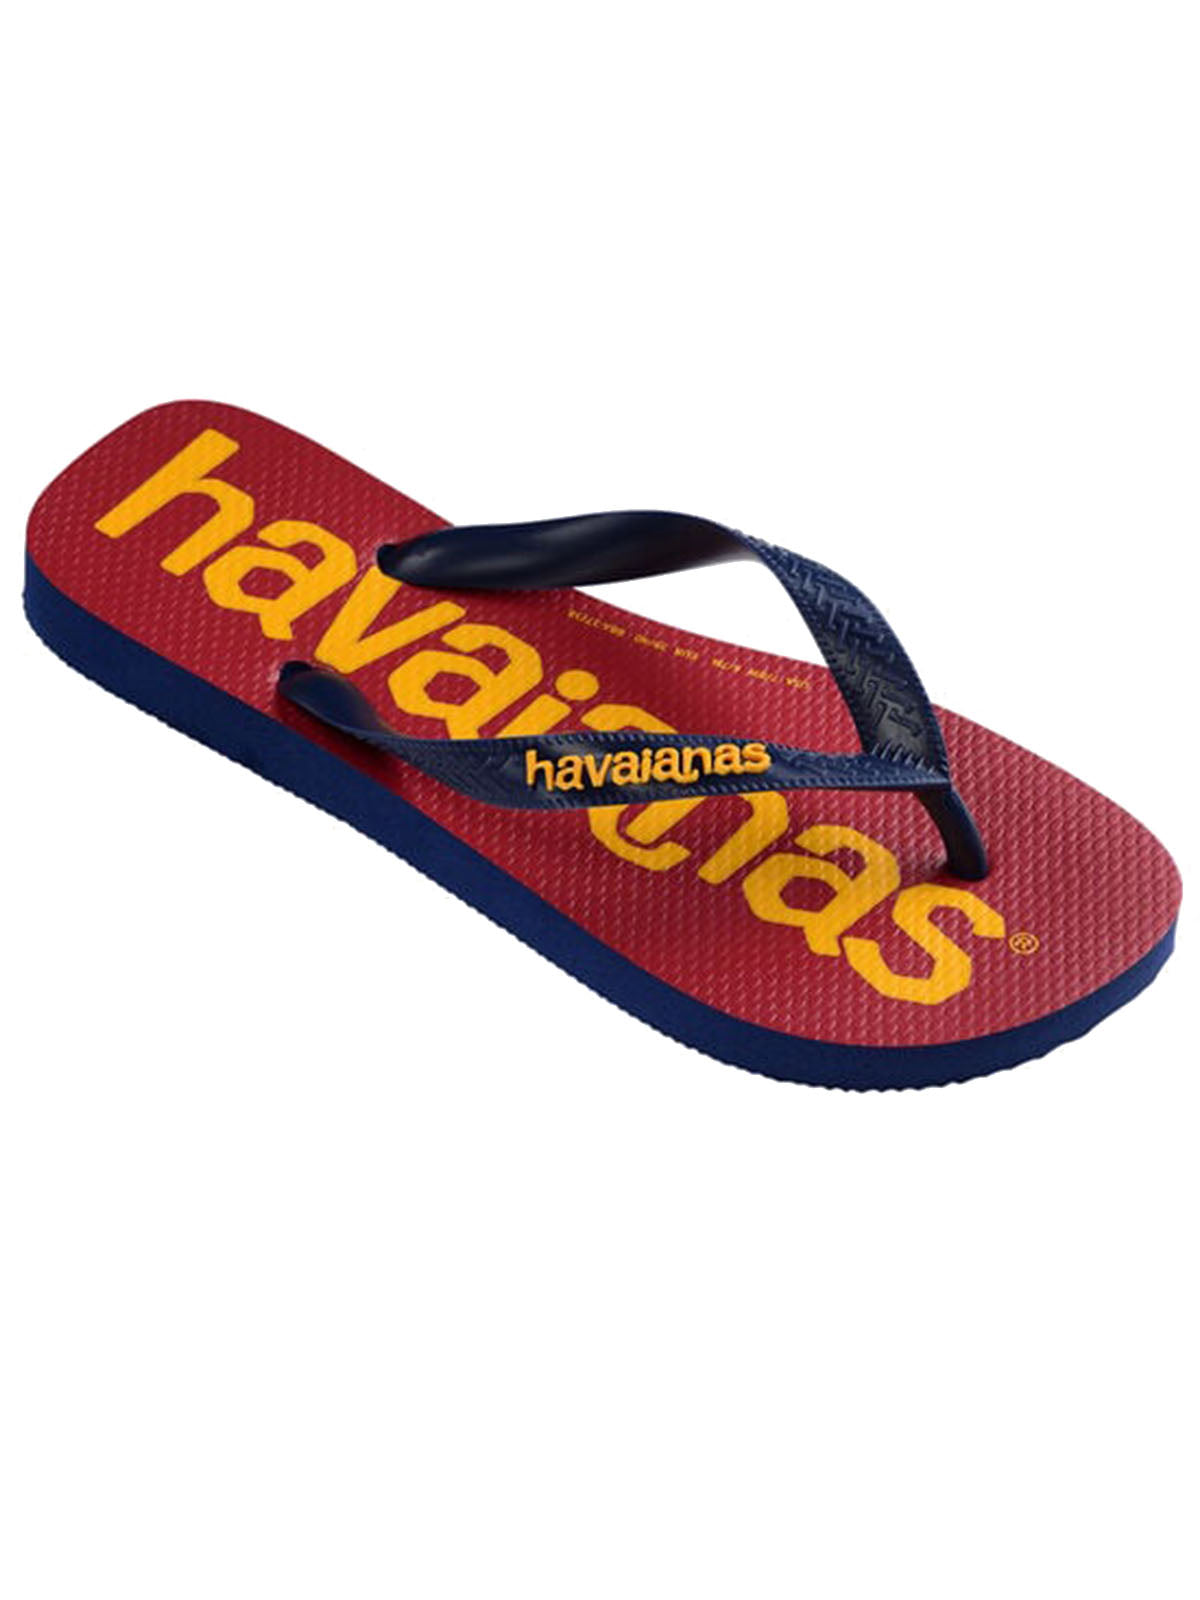 Havaianas Unisex Flip Flops - Havaianas Top Logomania 2 - Blue